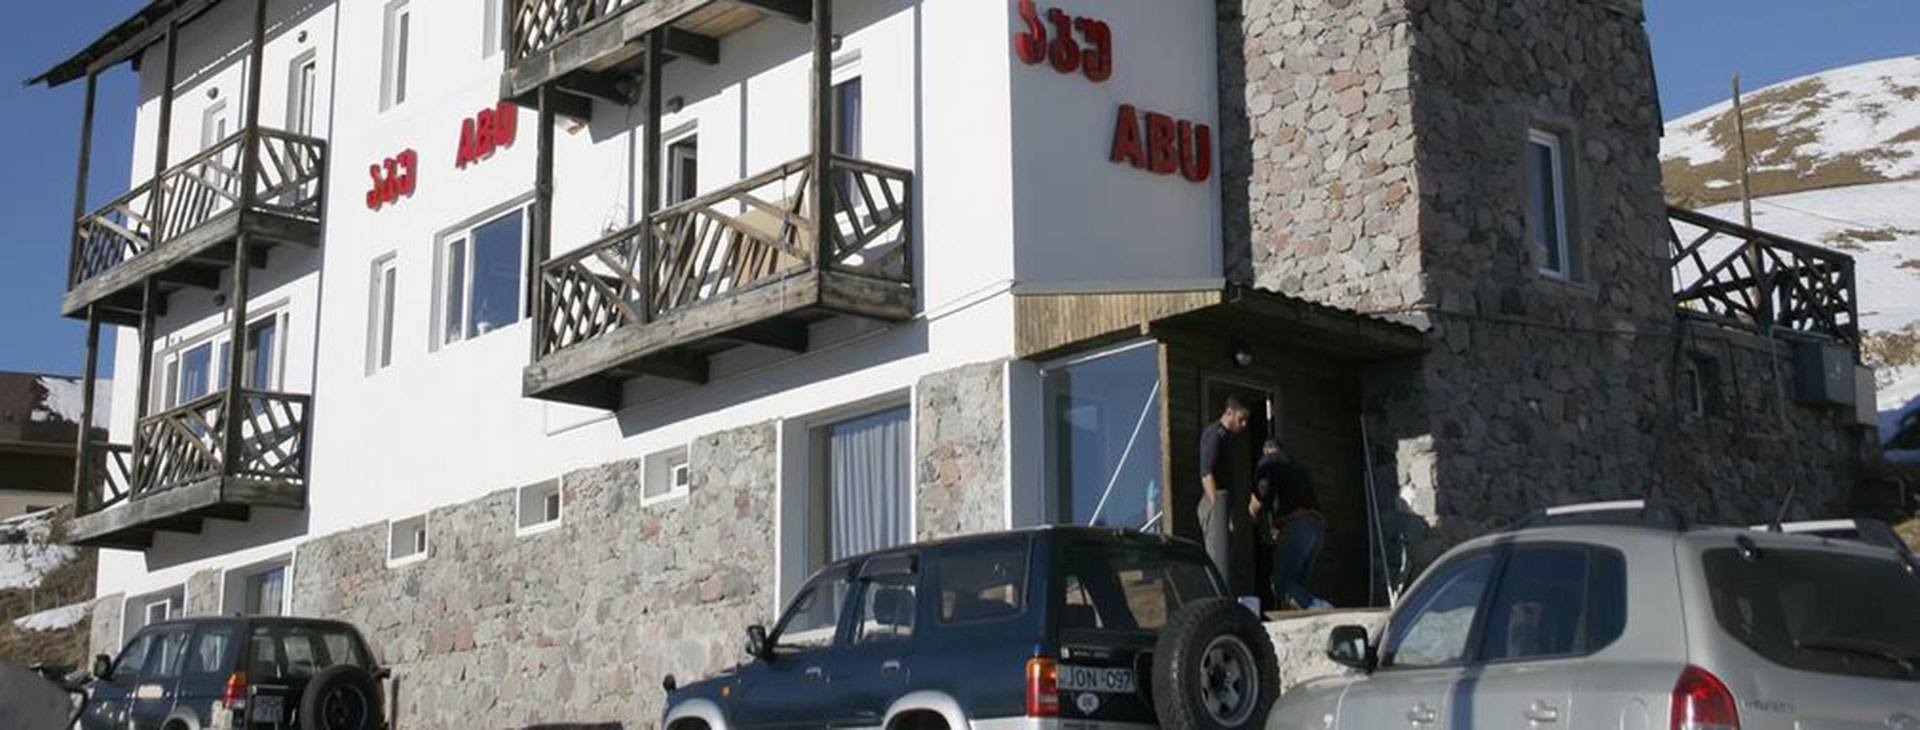 Abu Hotel